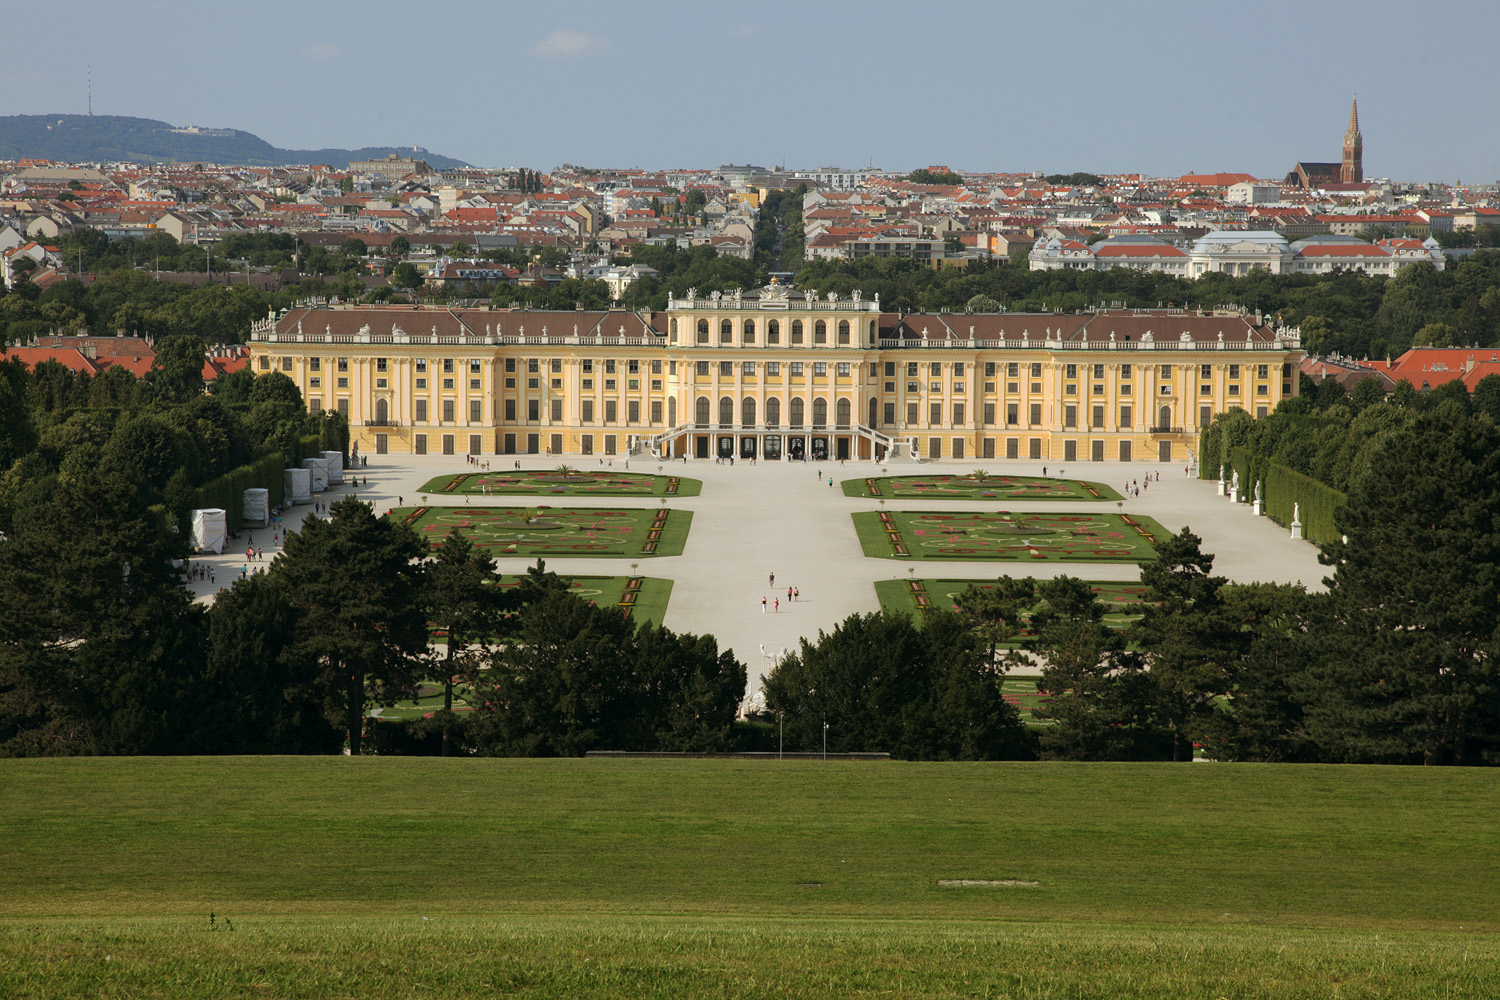 bill-hocker-schoenbrunn-palace-vienna-austria-2013